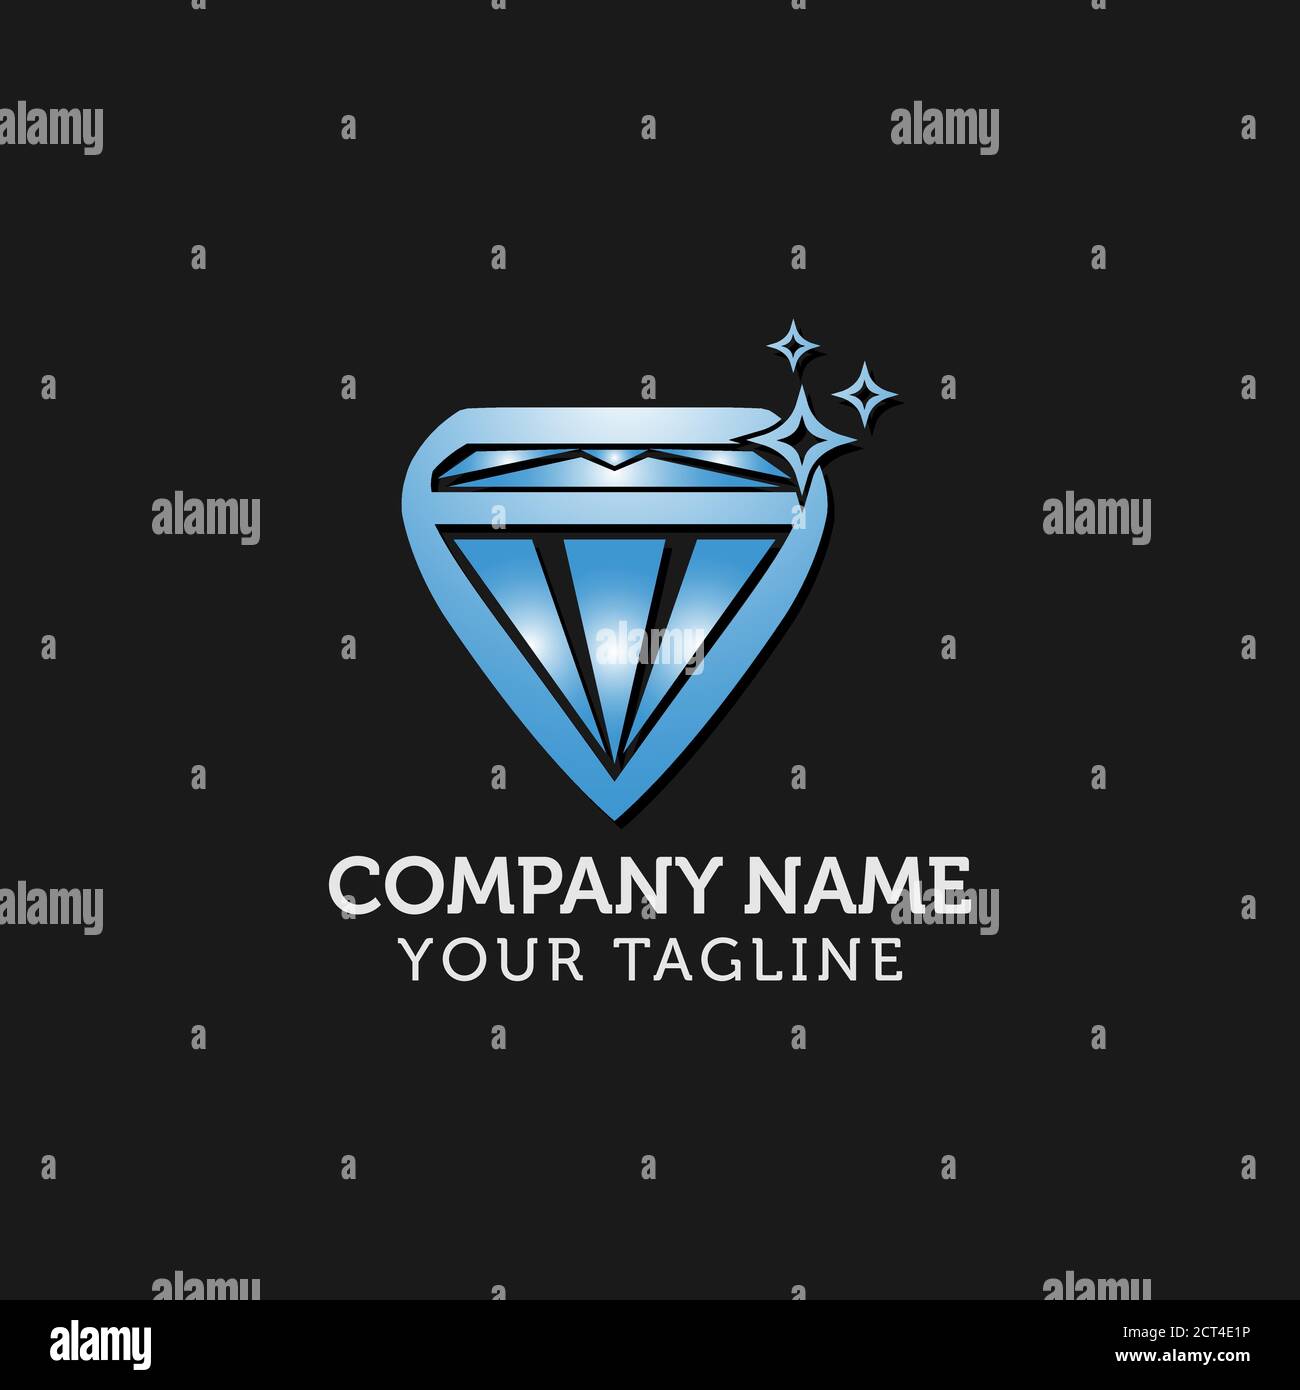 Diamond abstract logo, symbol, icon,graphic,vector. Stock Vector